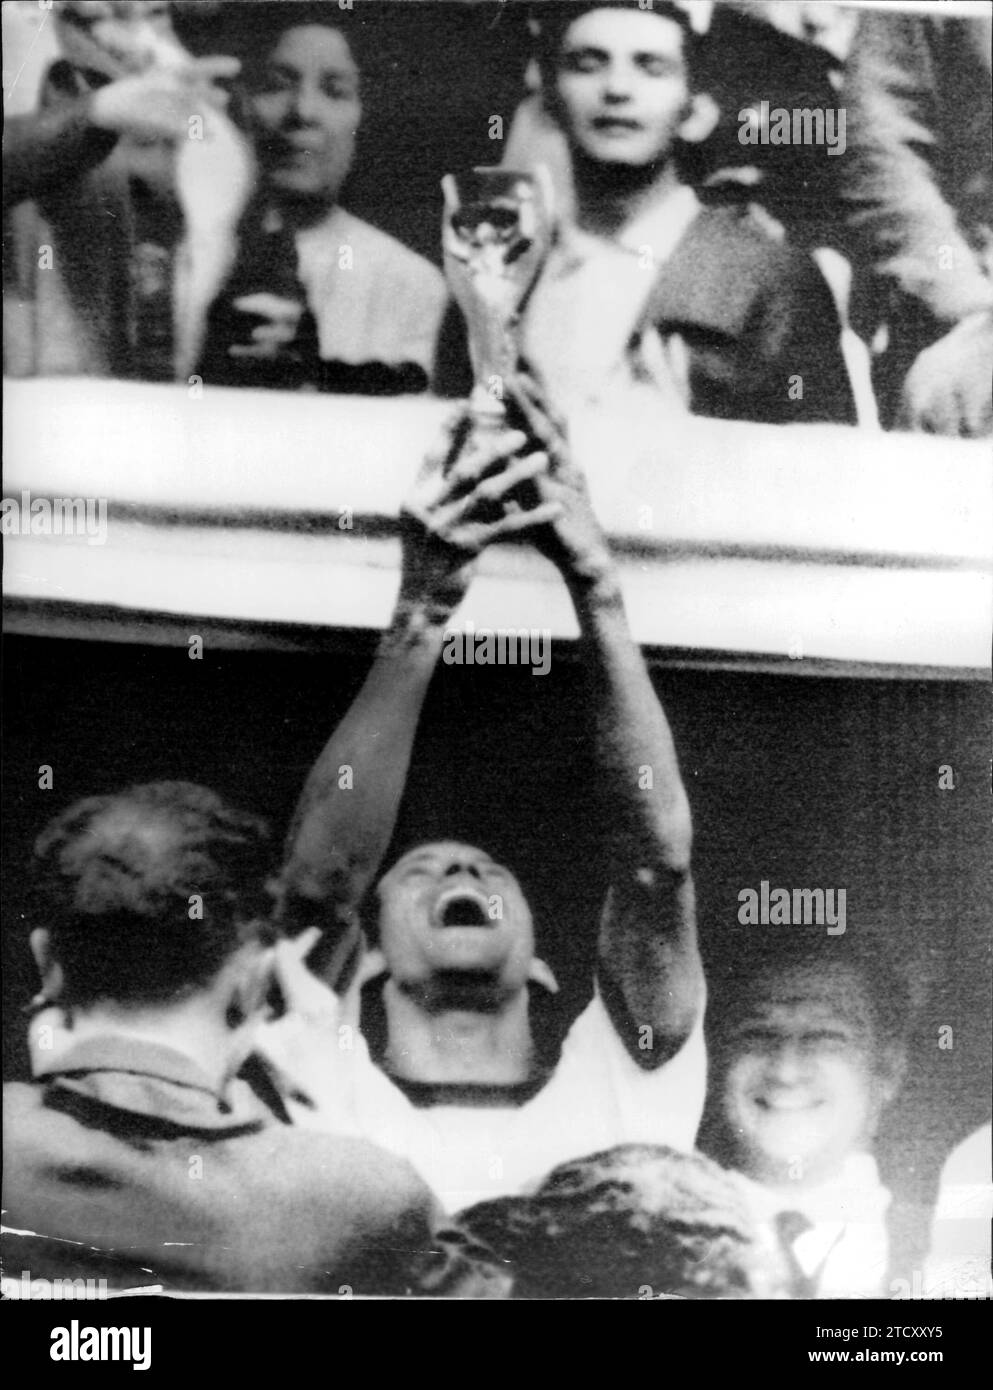 Messico, 21/6/1970.- il capitano della squadra di calcio brasiliana, Carlos Alberto, alza la coppa del mondo sopra la sua testa, ha vinto dopo aver battuto l'Italia 4-1 in finale. Crediti: Album / Archivo ABC Foto Stock